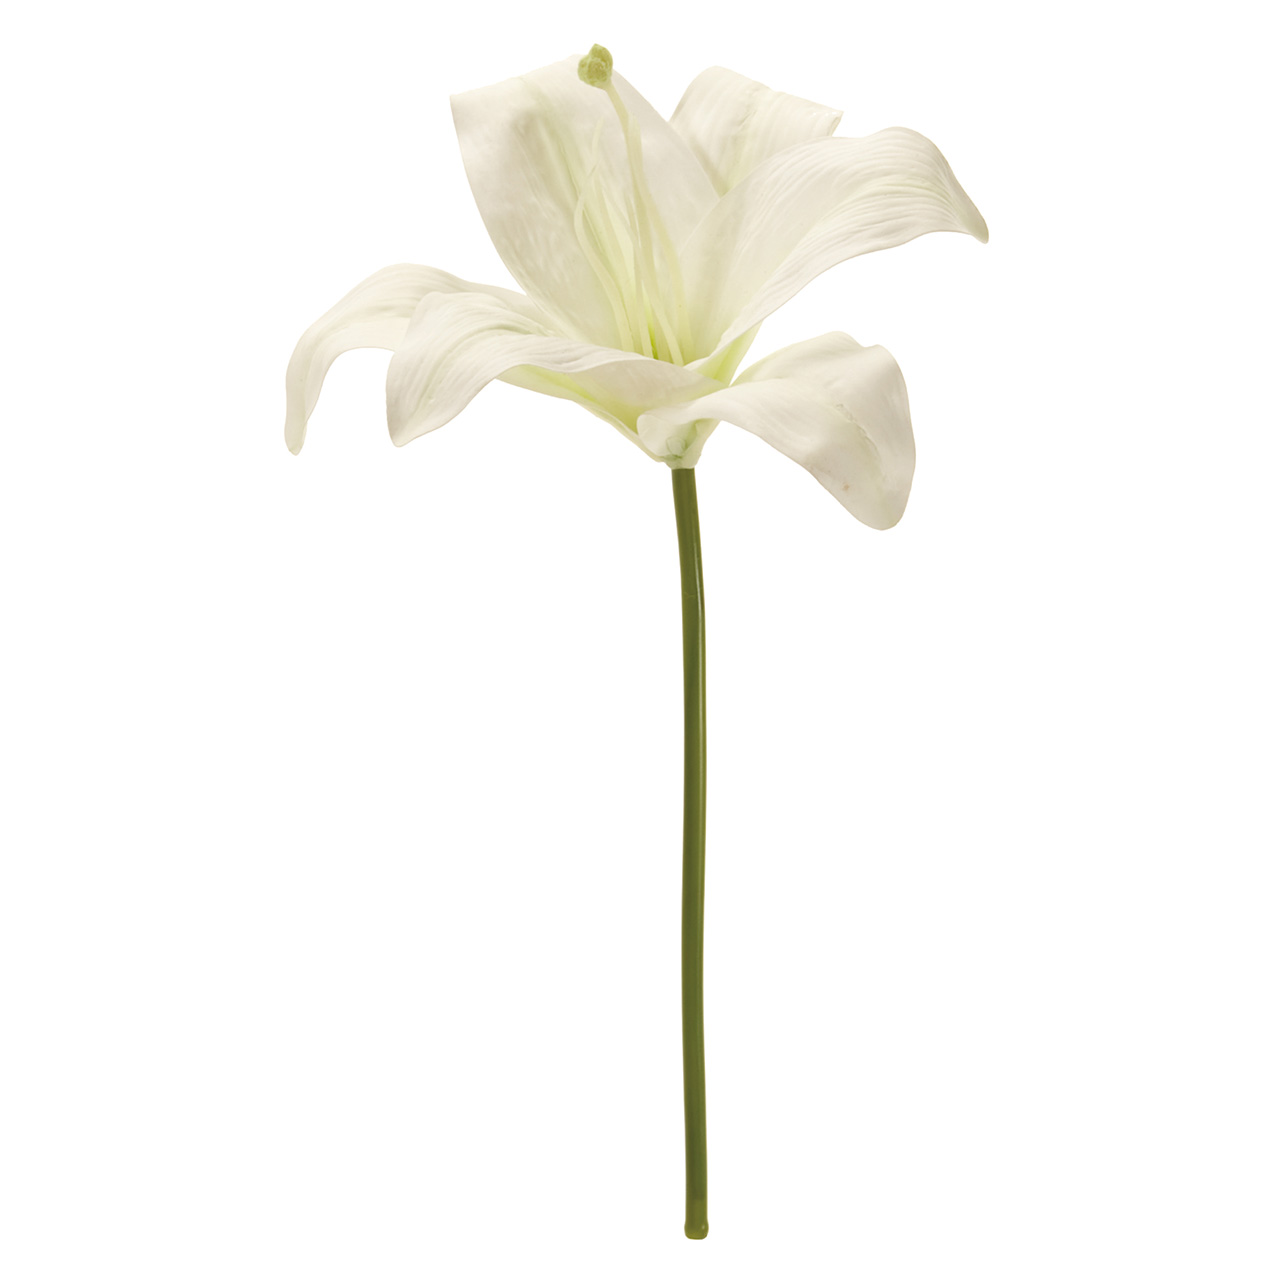 マイフラ 通販 Magiq マリア カサブランカ ピック ホワイト アーティフィシャルフラワー 造花 Fm007134 ユリ 花径 約16 全長 約30cm ホワイト Magiq アーティフィシャルフラワー 造花 全国にmagiq 花器 花資材などをお届けします